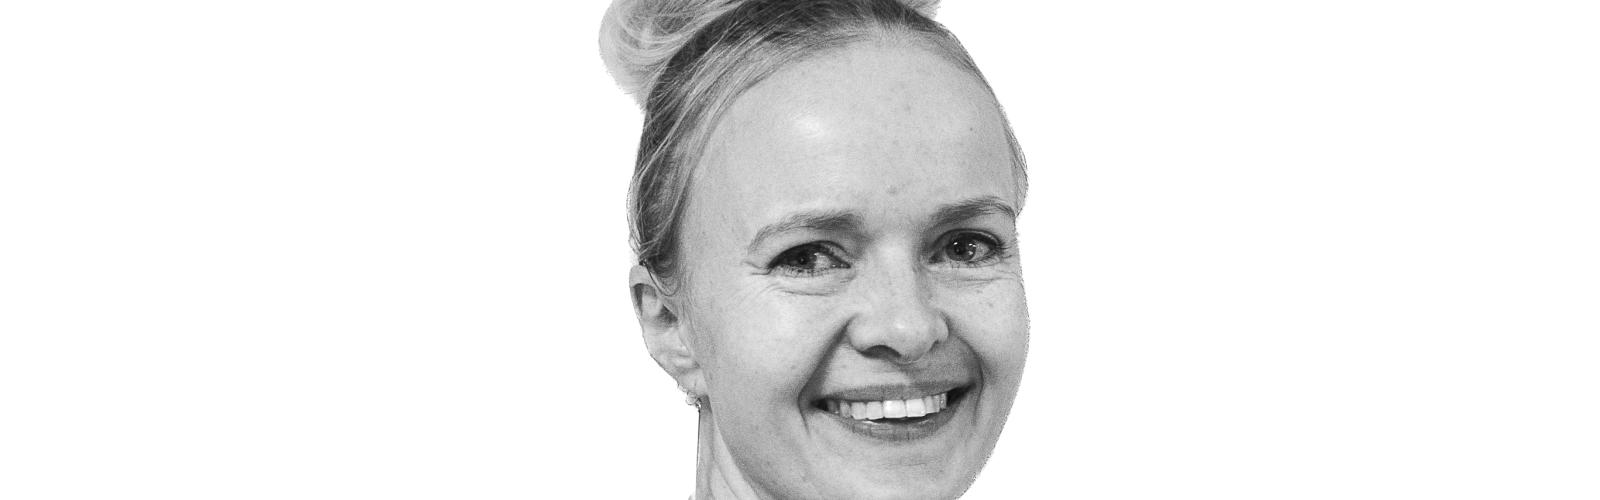 Charlotte Lund Didriksen - kommunikationskonsulent